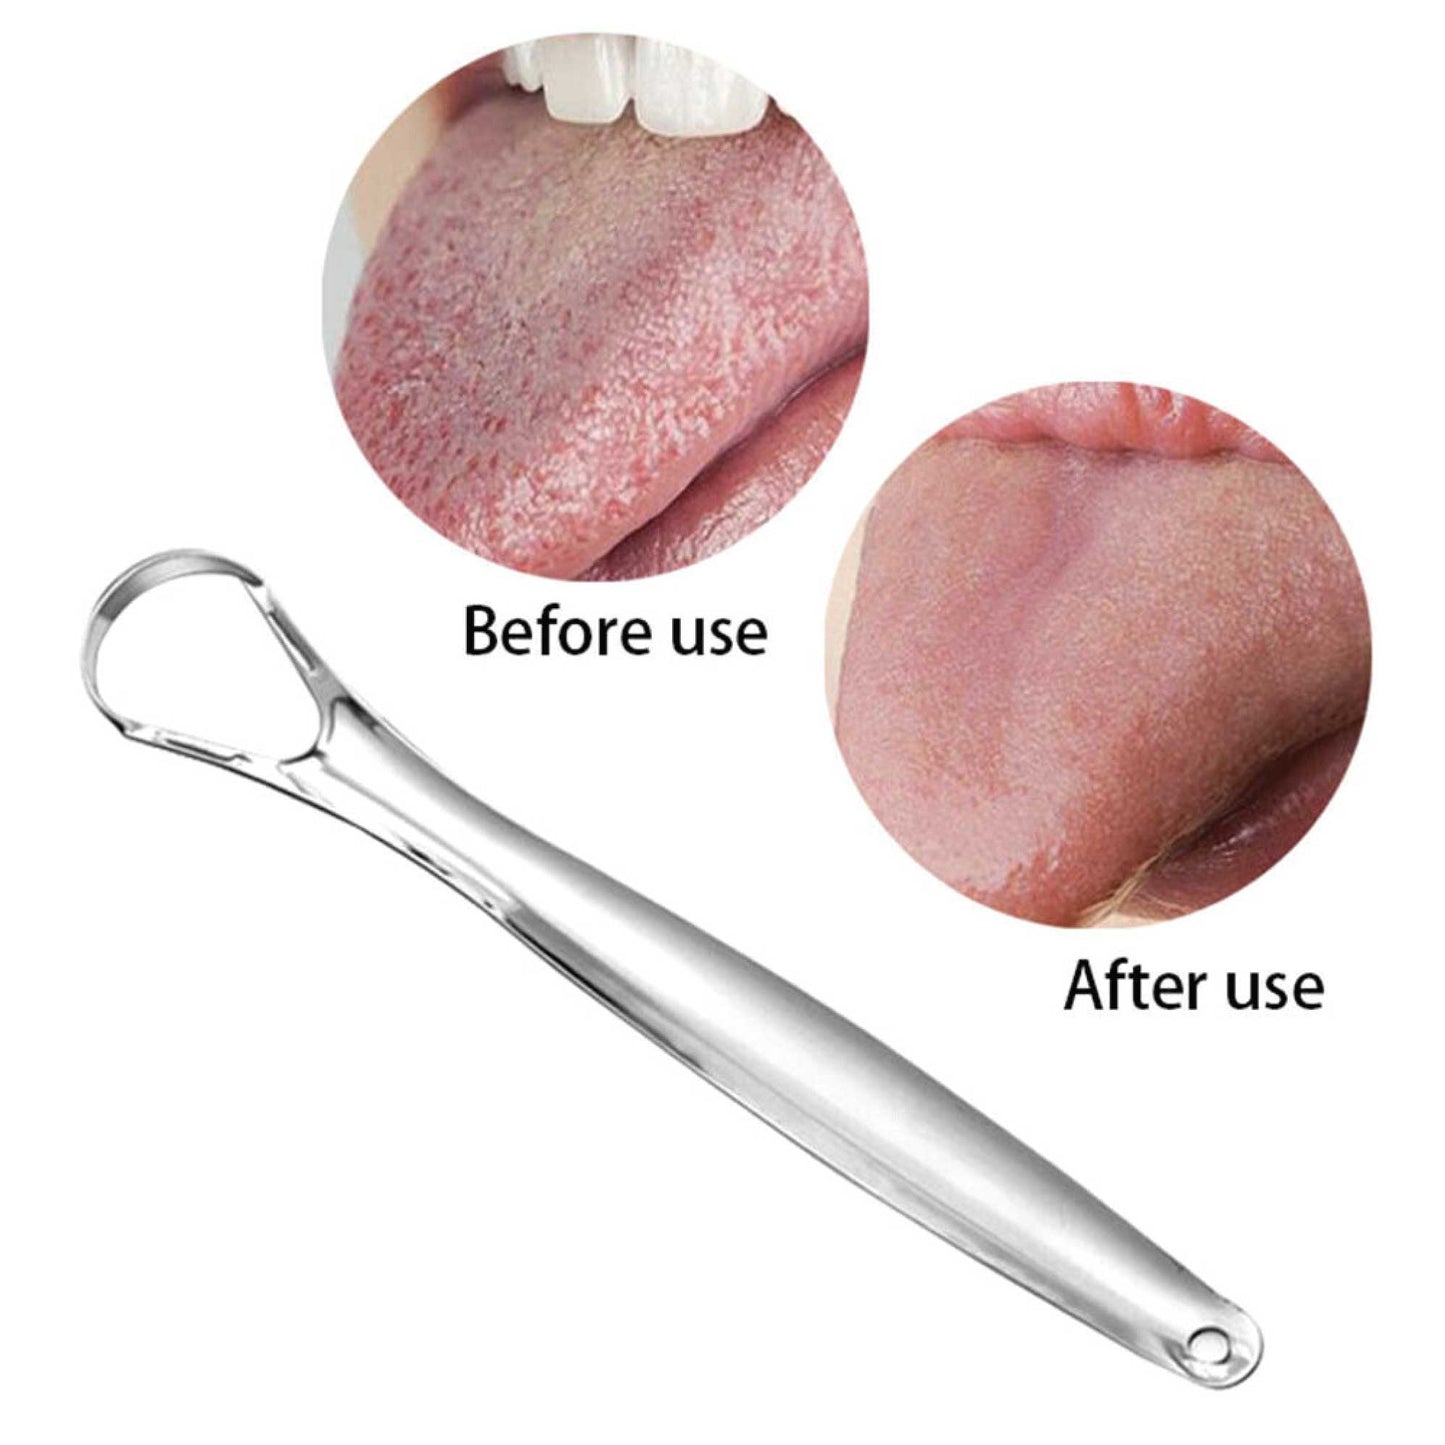 Stainless Steel Tongue Scraper Cleaner Oral Hygiene Reduce Bad Breath Metal Tool